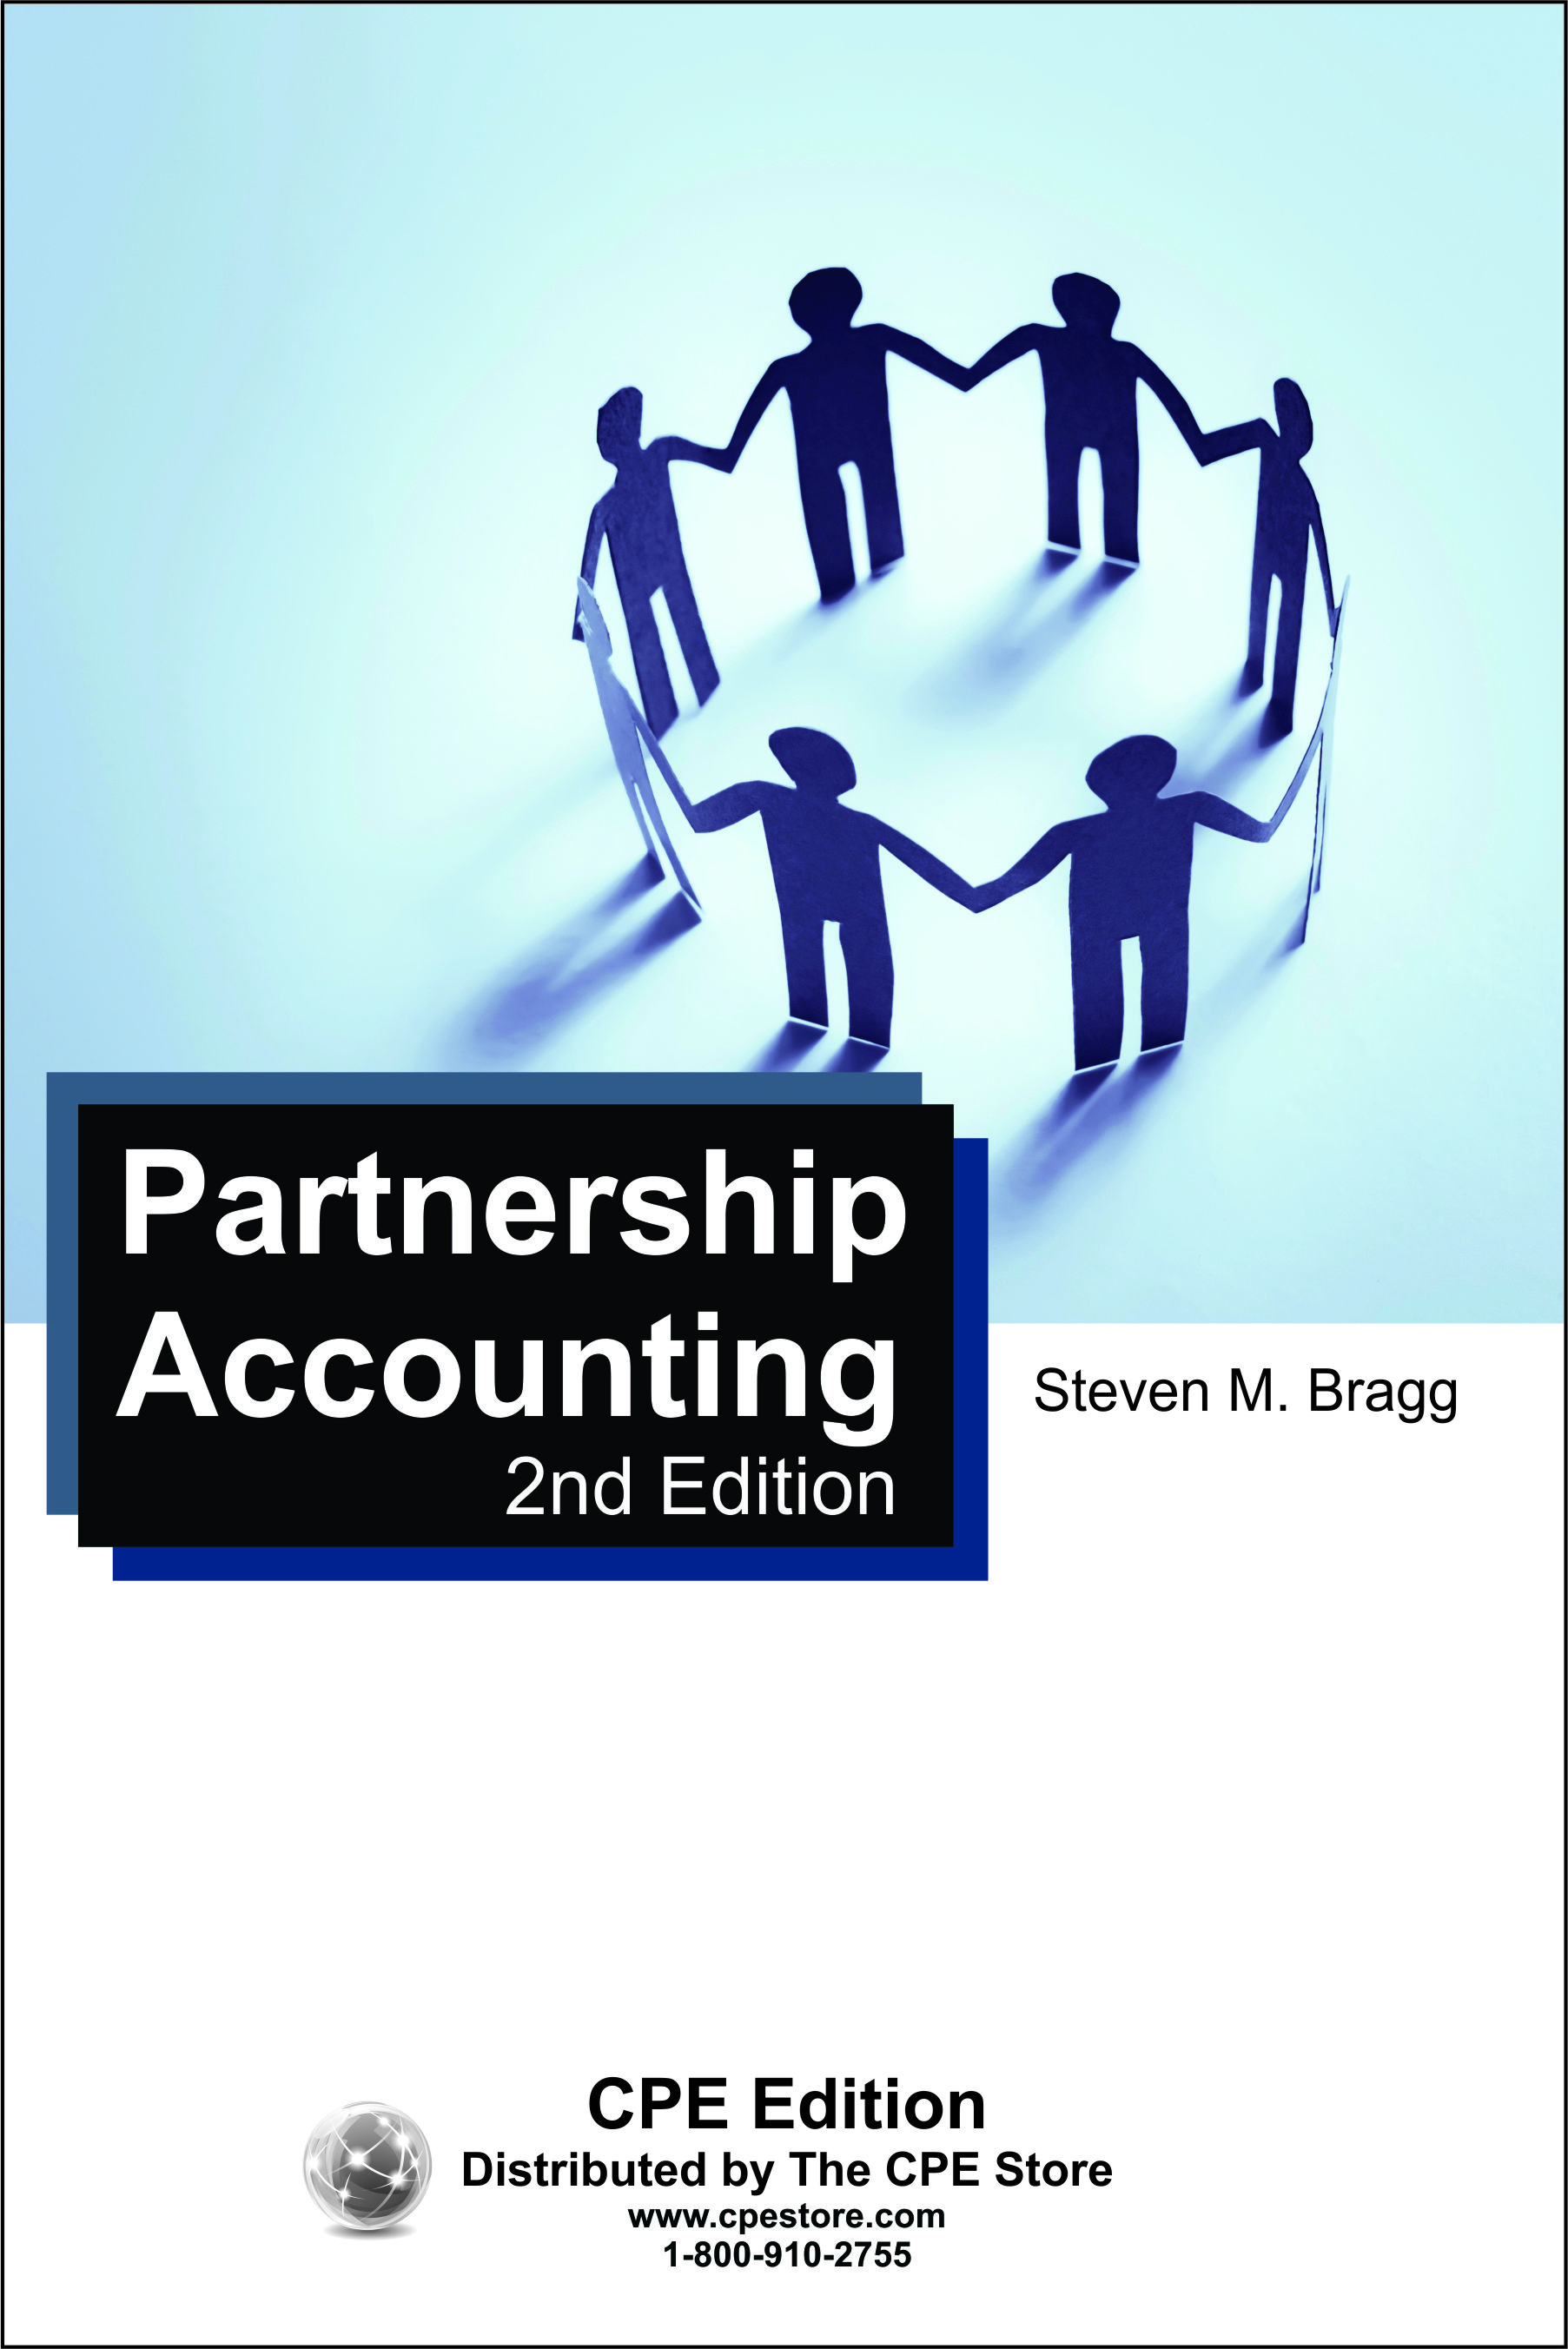 Partnership Accounting